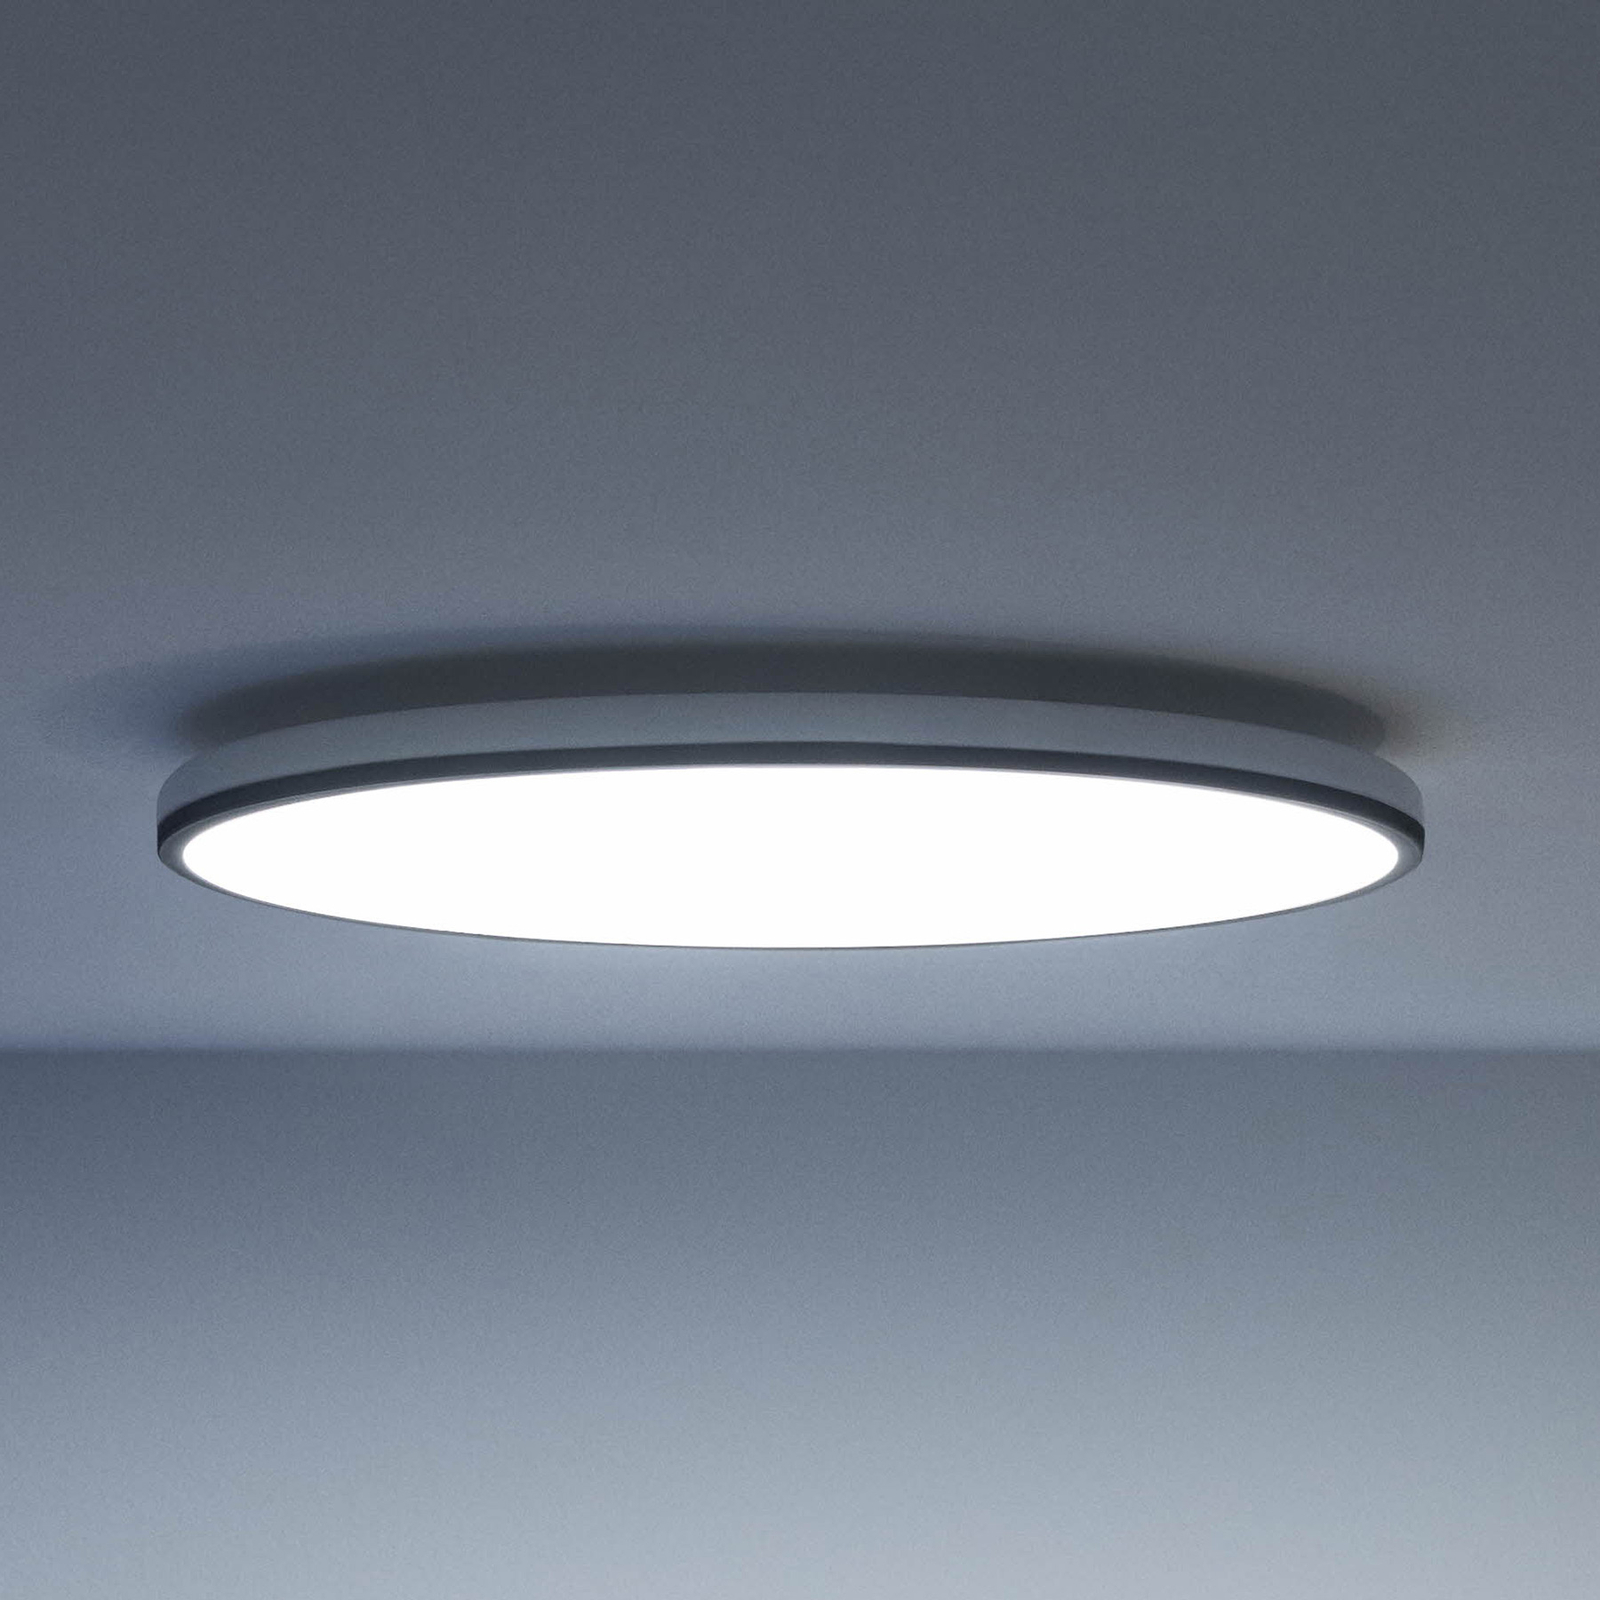 WiZ Rune LED ceiling light, black